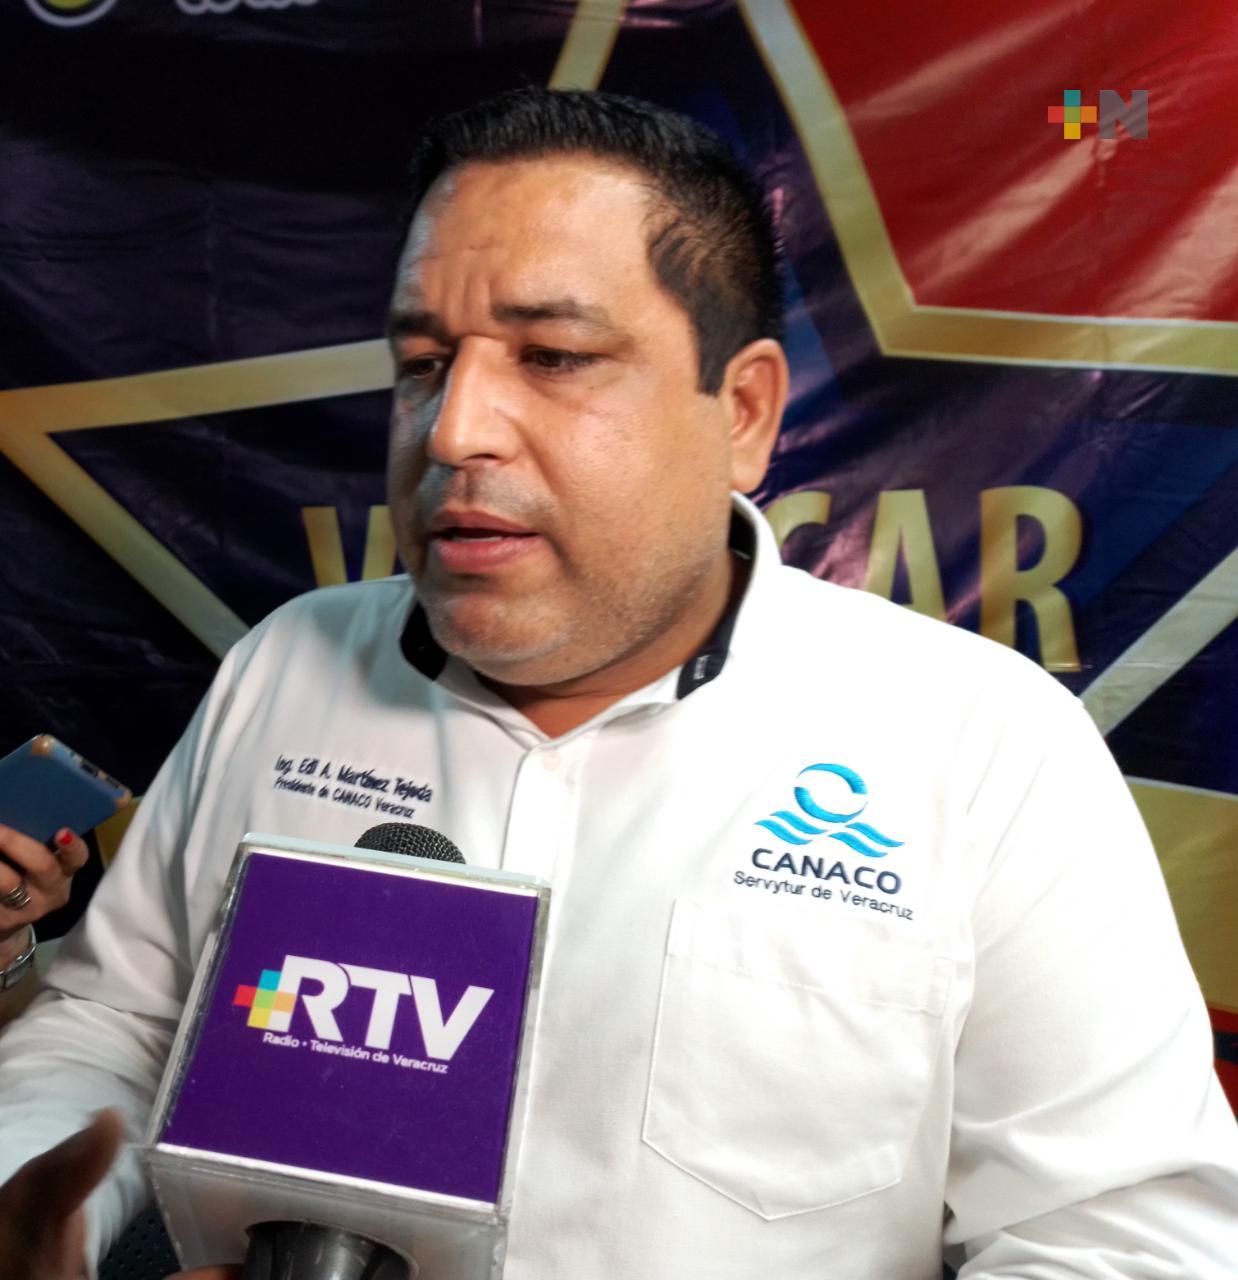 Disminución de inseguridad en el estado muestra trabajo del gobierno: Canaco Veracruz